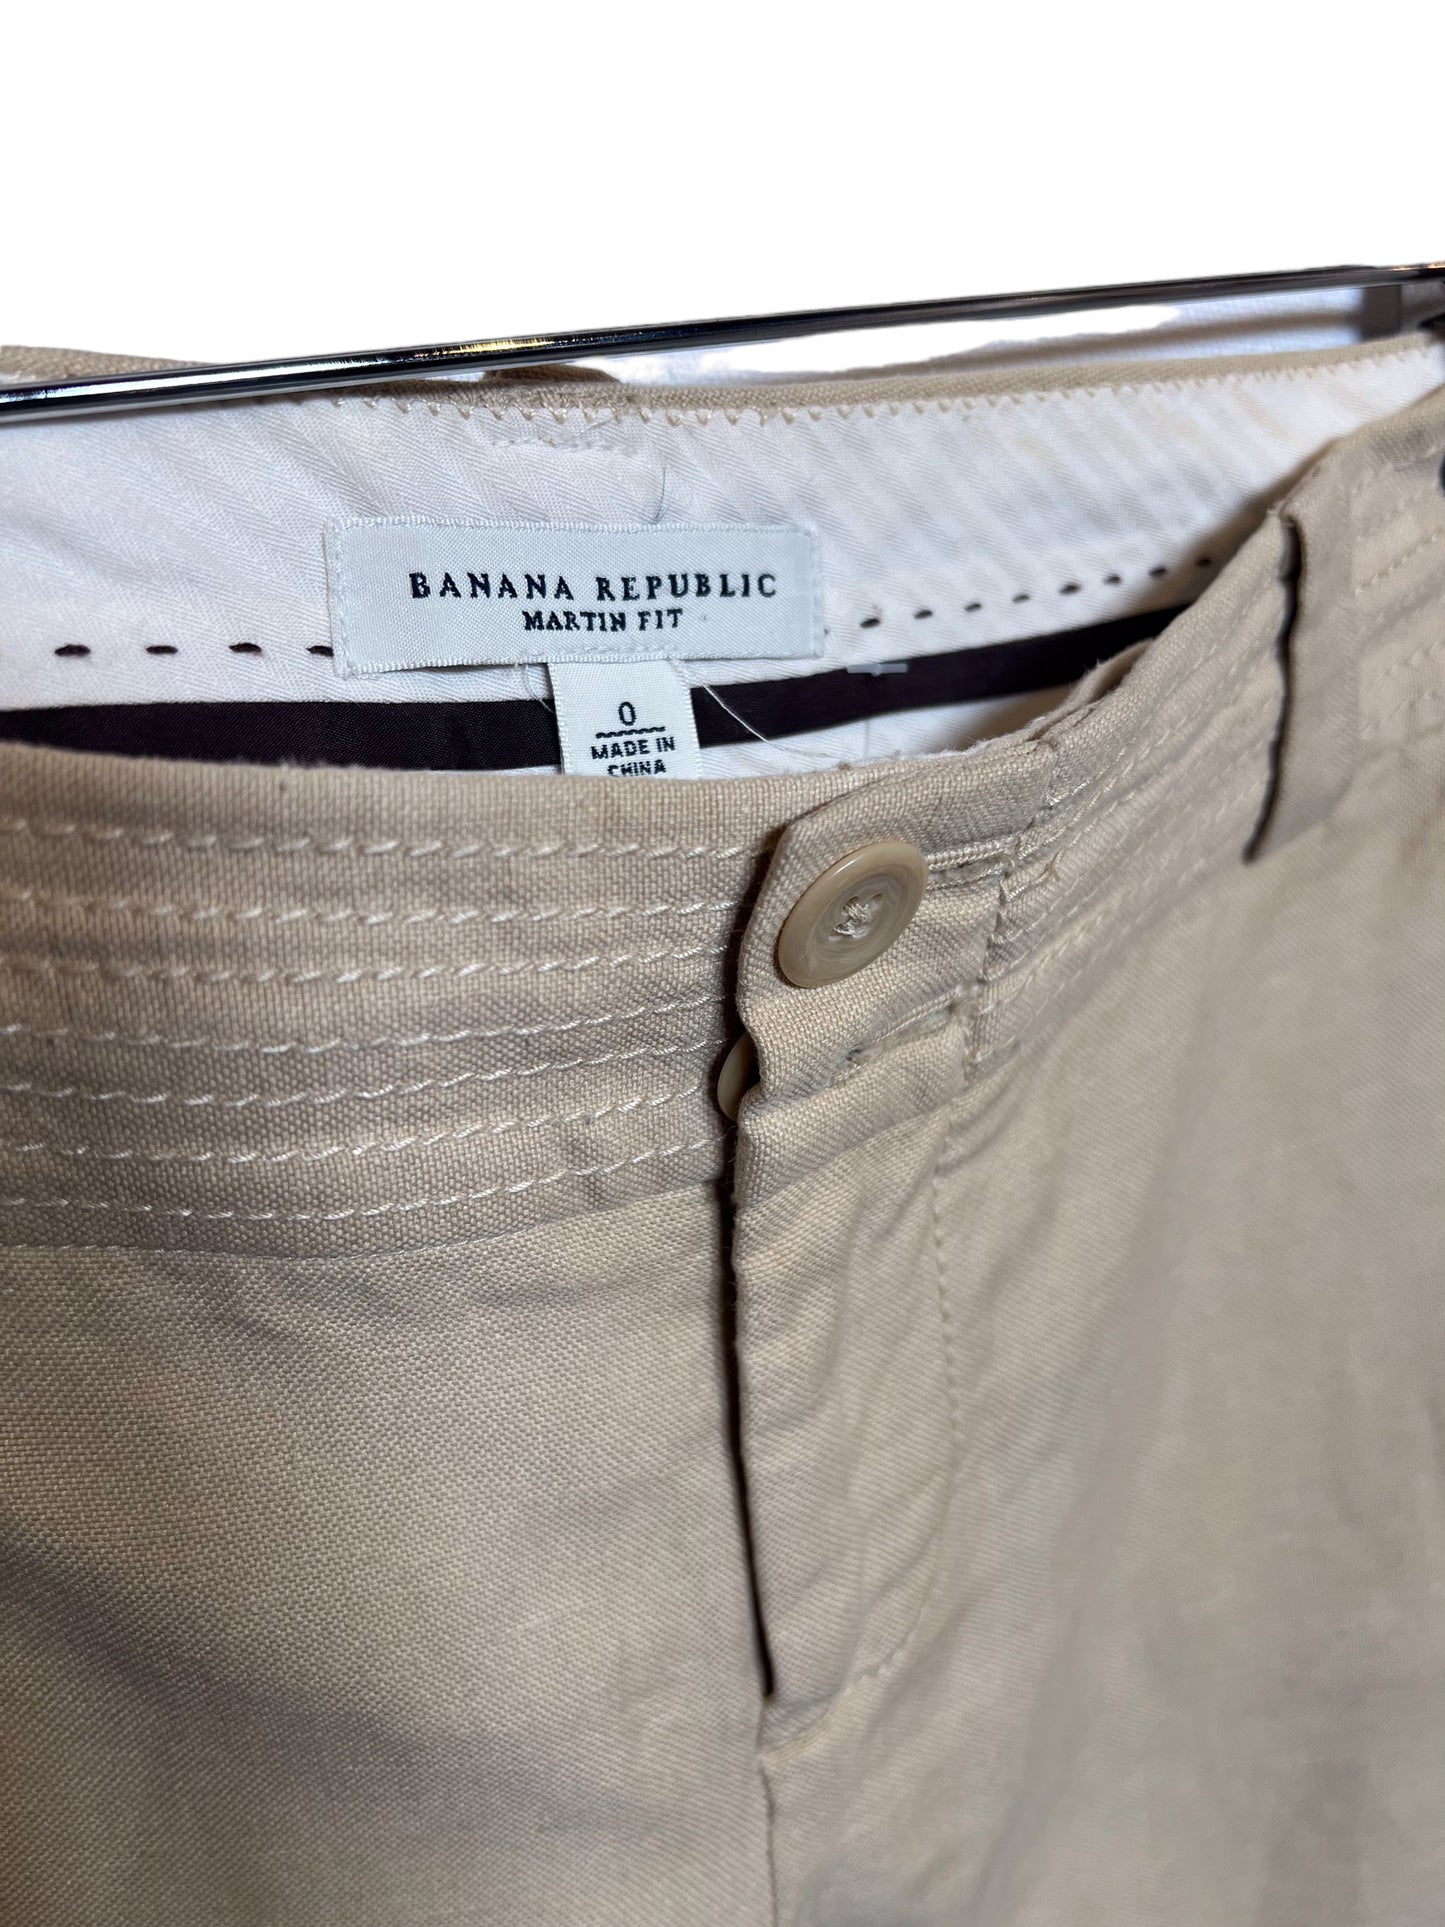 Banana Republic Women’s Tan Shorts (Size M)